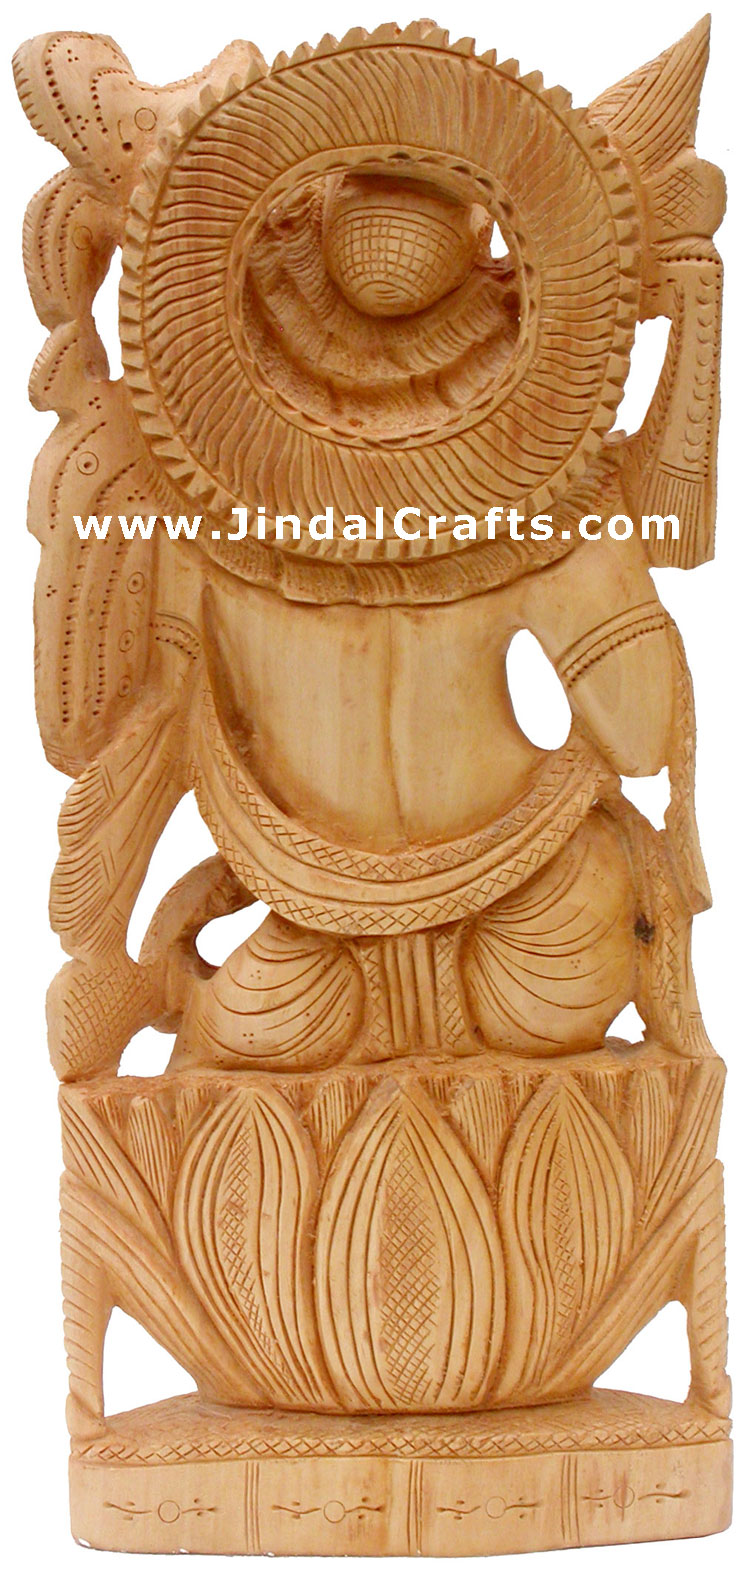 Handcrafted Wooden Krishna Hindu Sculptures Art